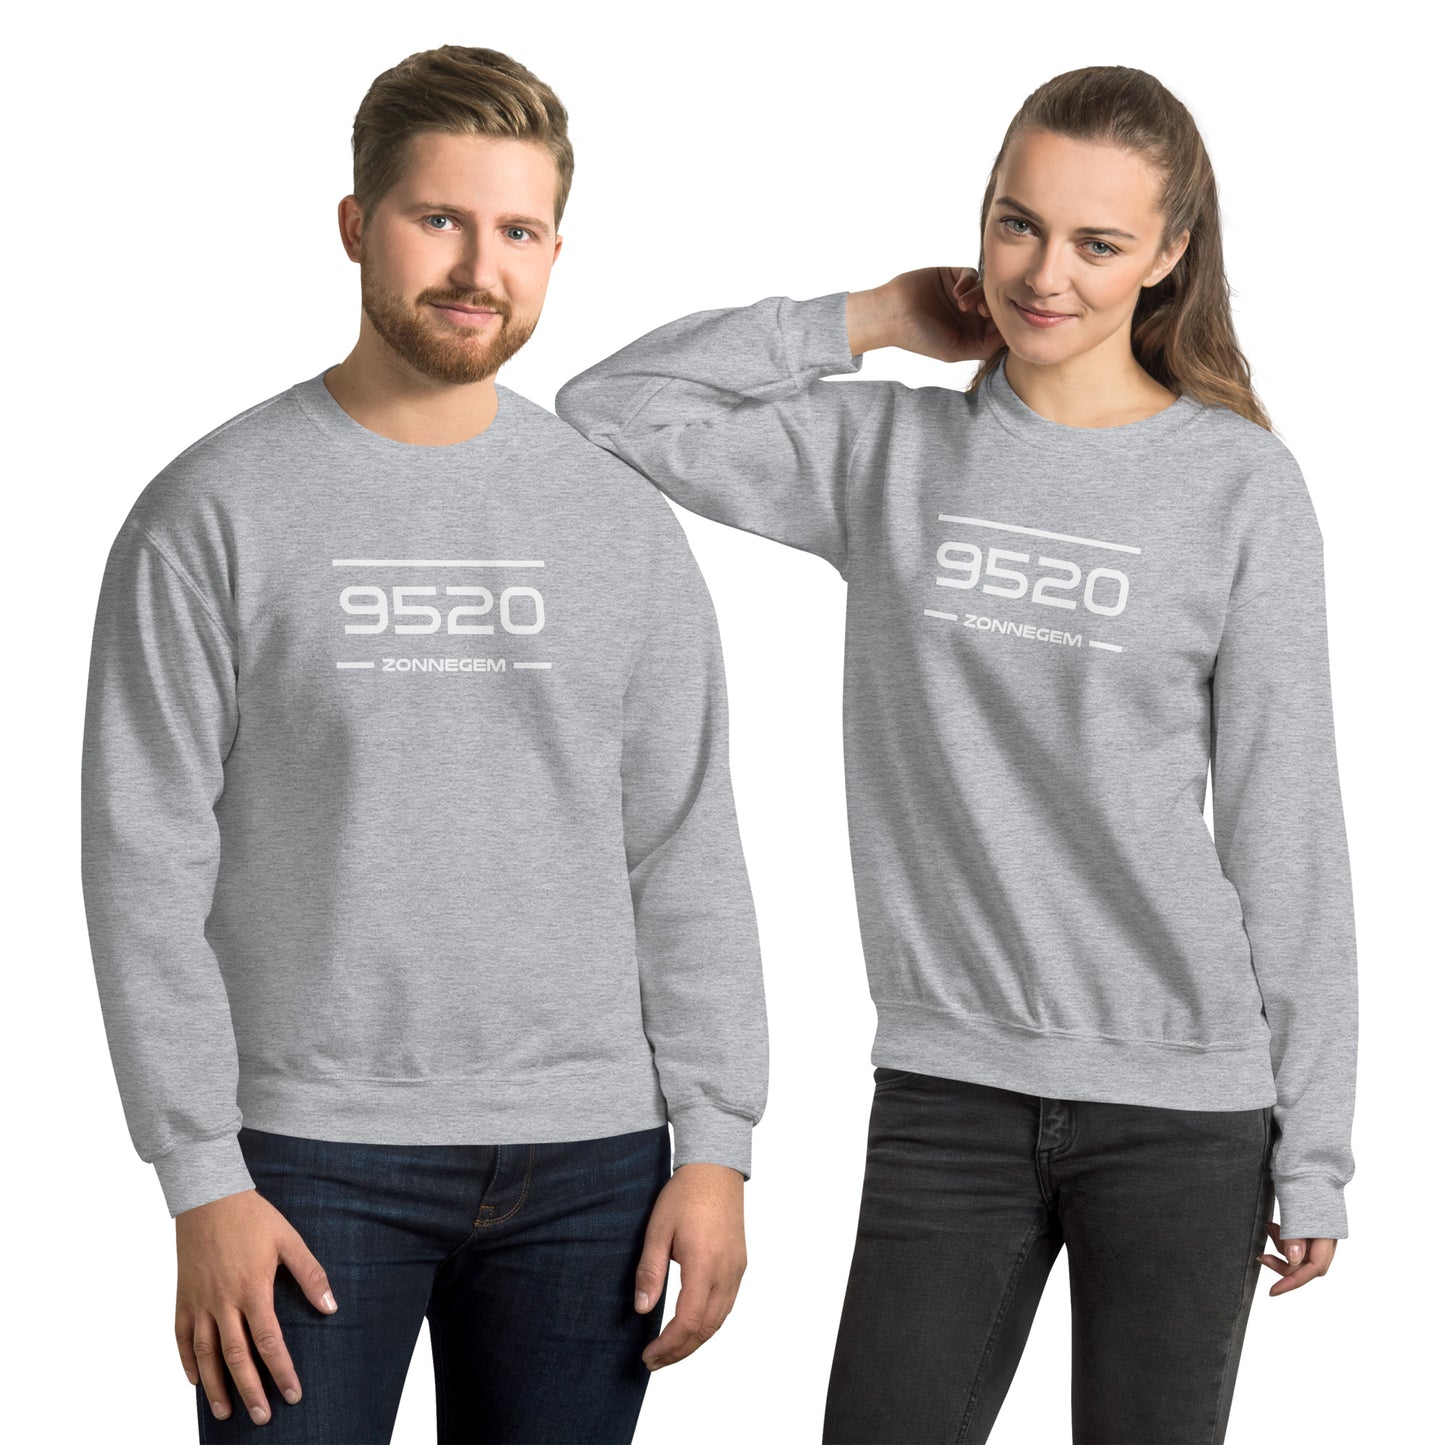 Sweater - 9520 - Zonnegem (M/V)